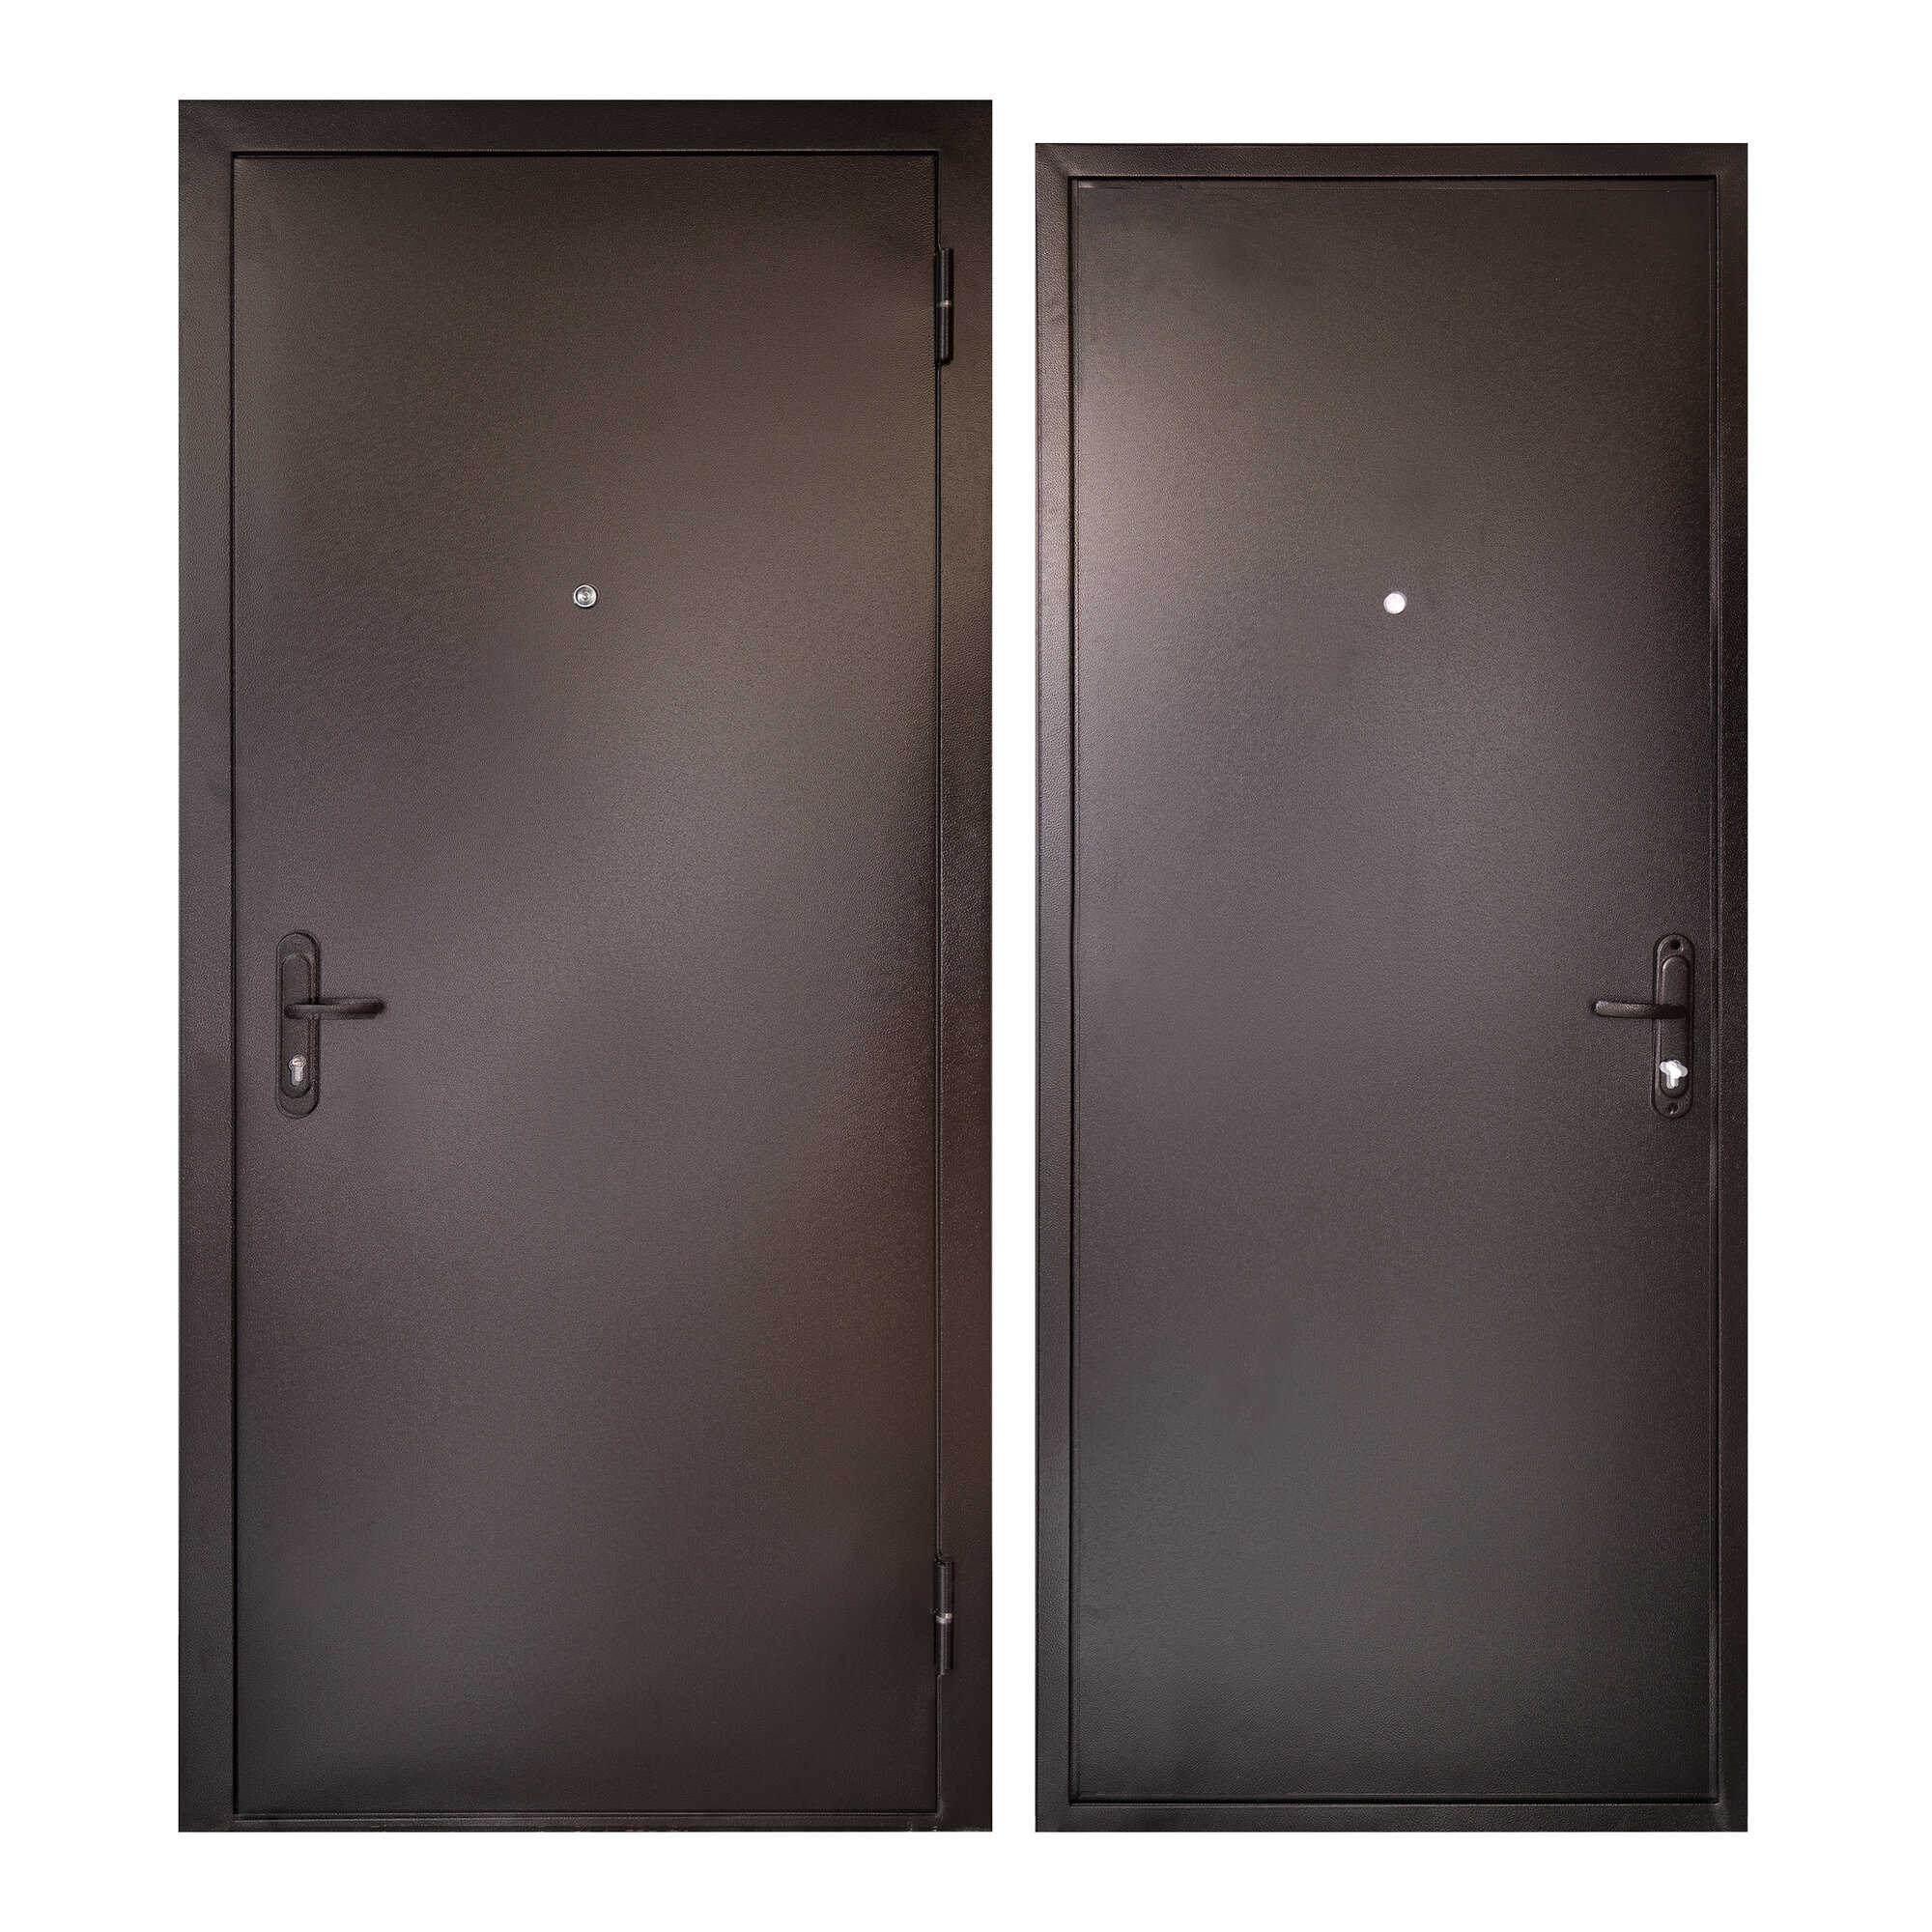 Дверь входная для квартиры Unicorn металлическая Terminal 960х2050, правая, антивандальное покрытие, уплотнитель, цилиндровый замок, коричневый